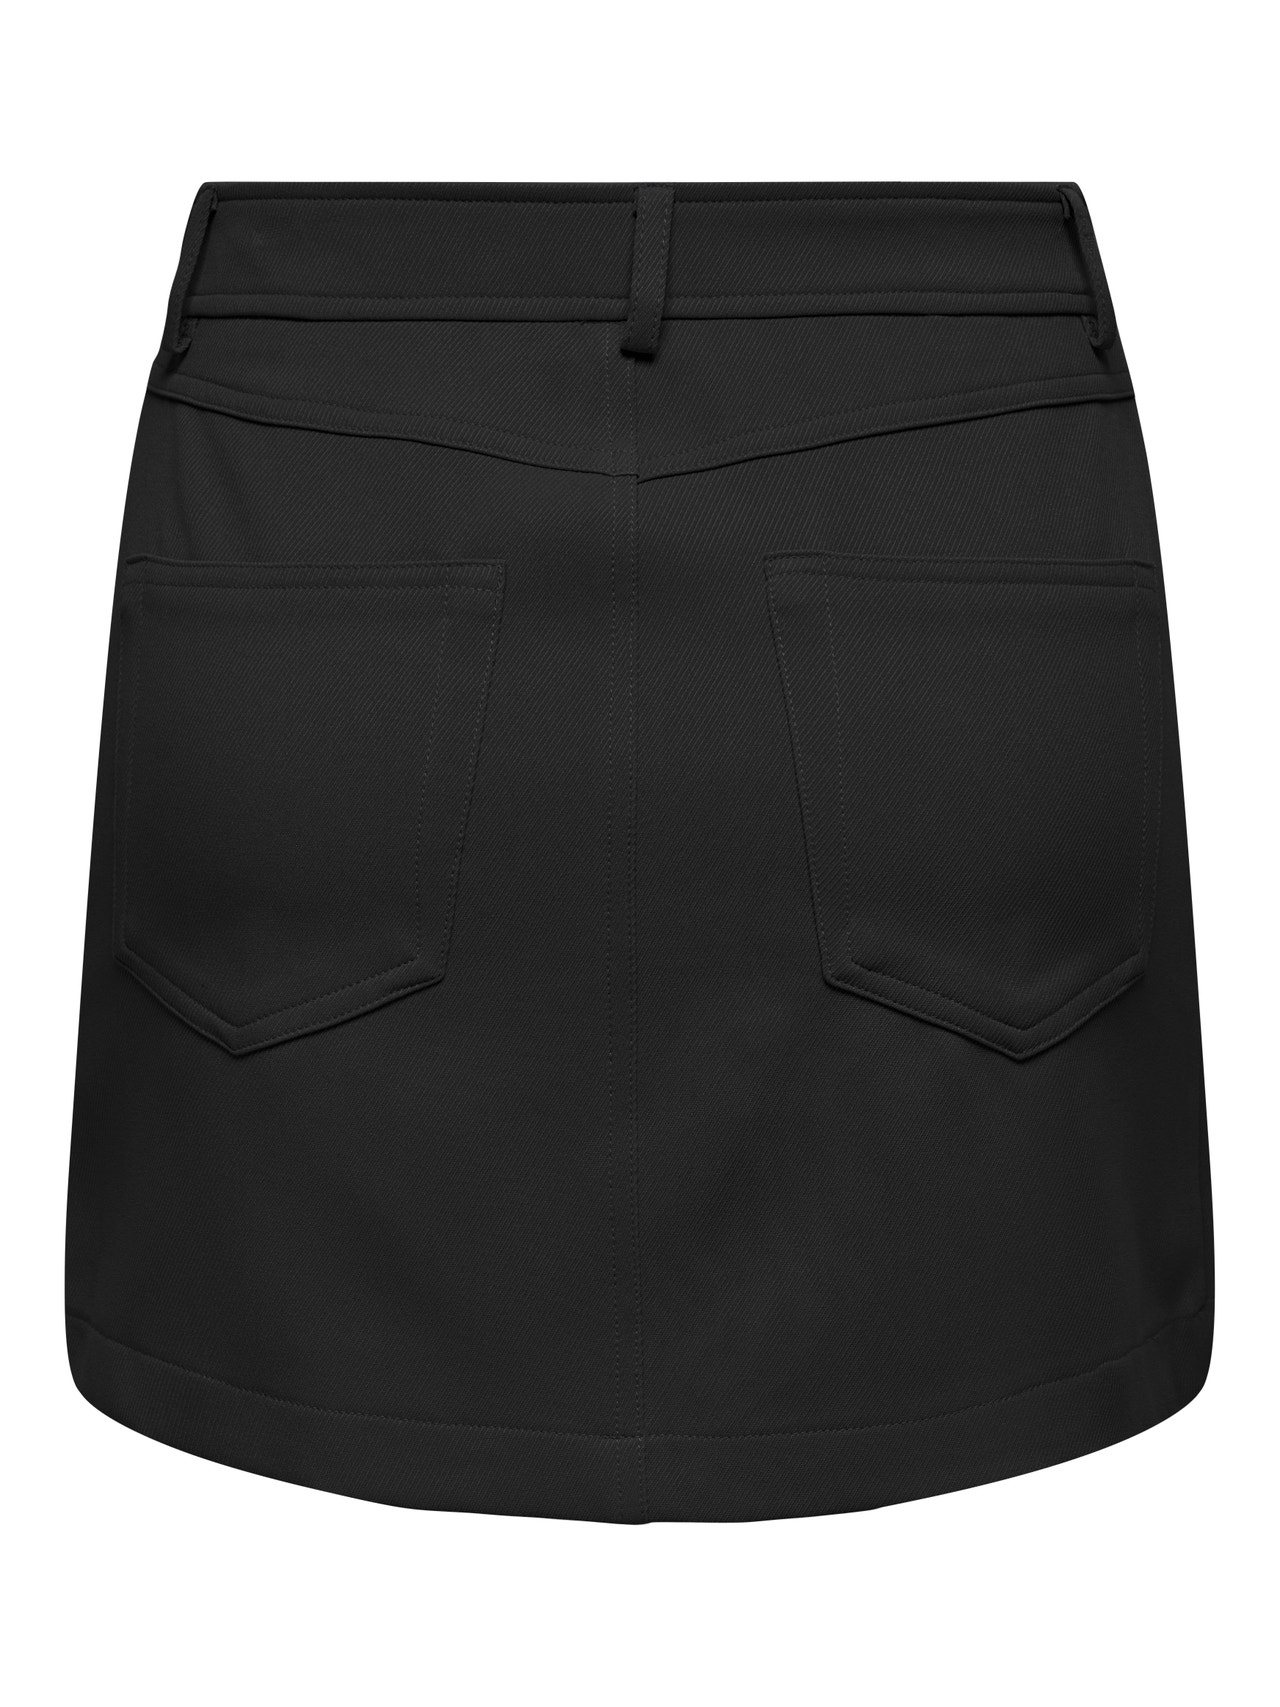 Short skirt | Black | ONLY®